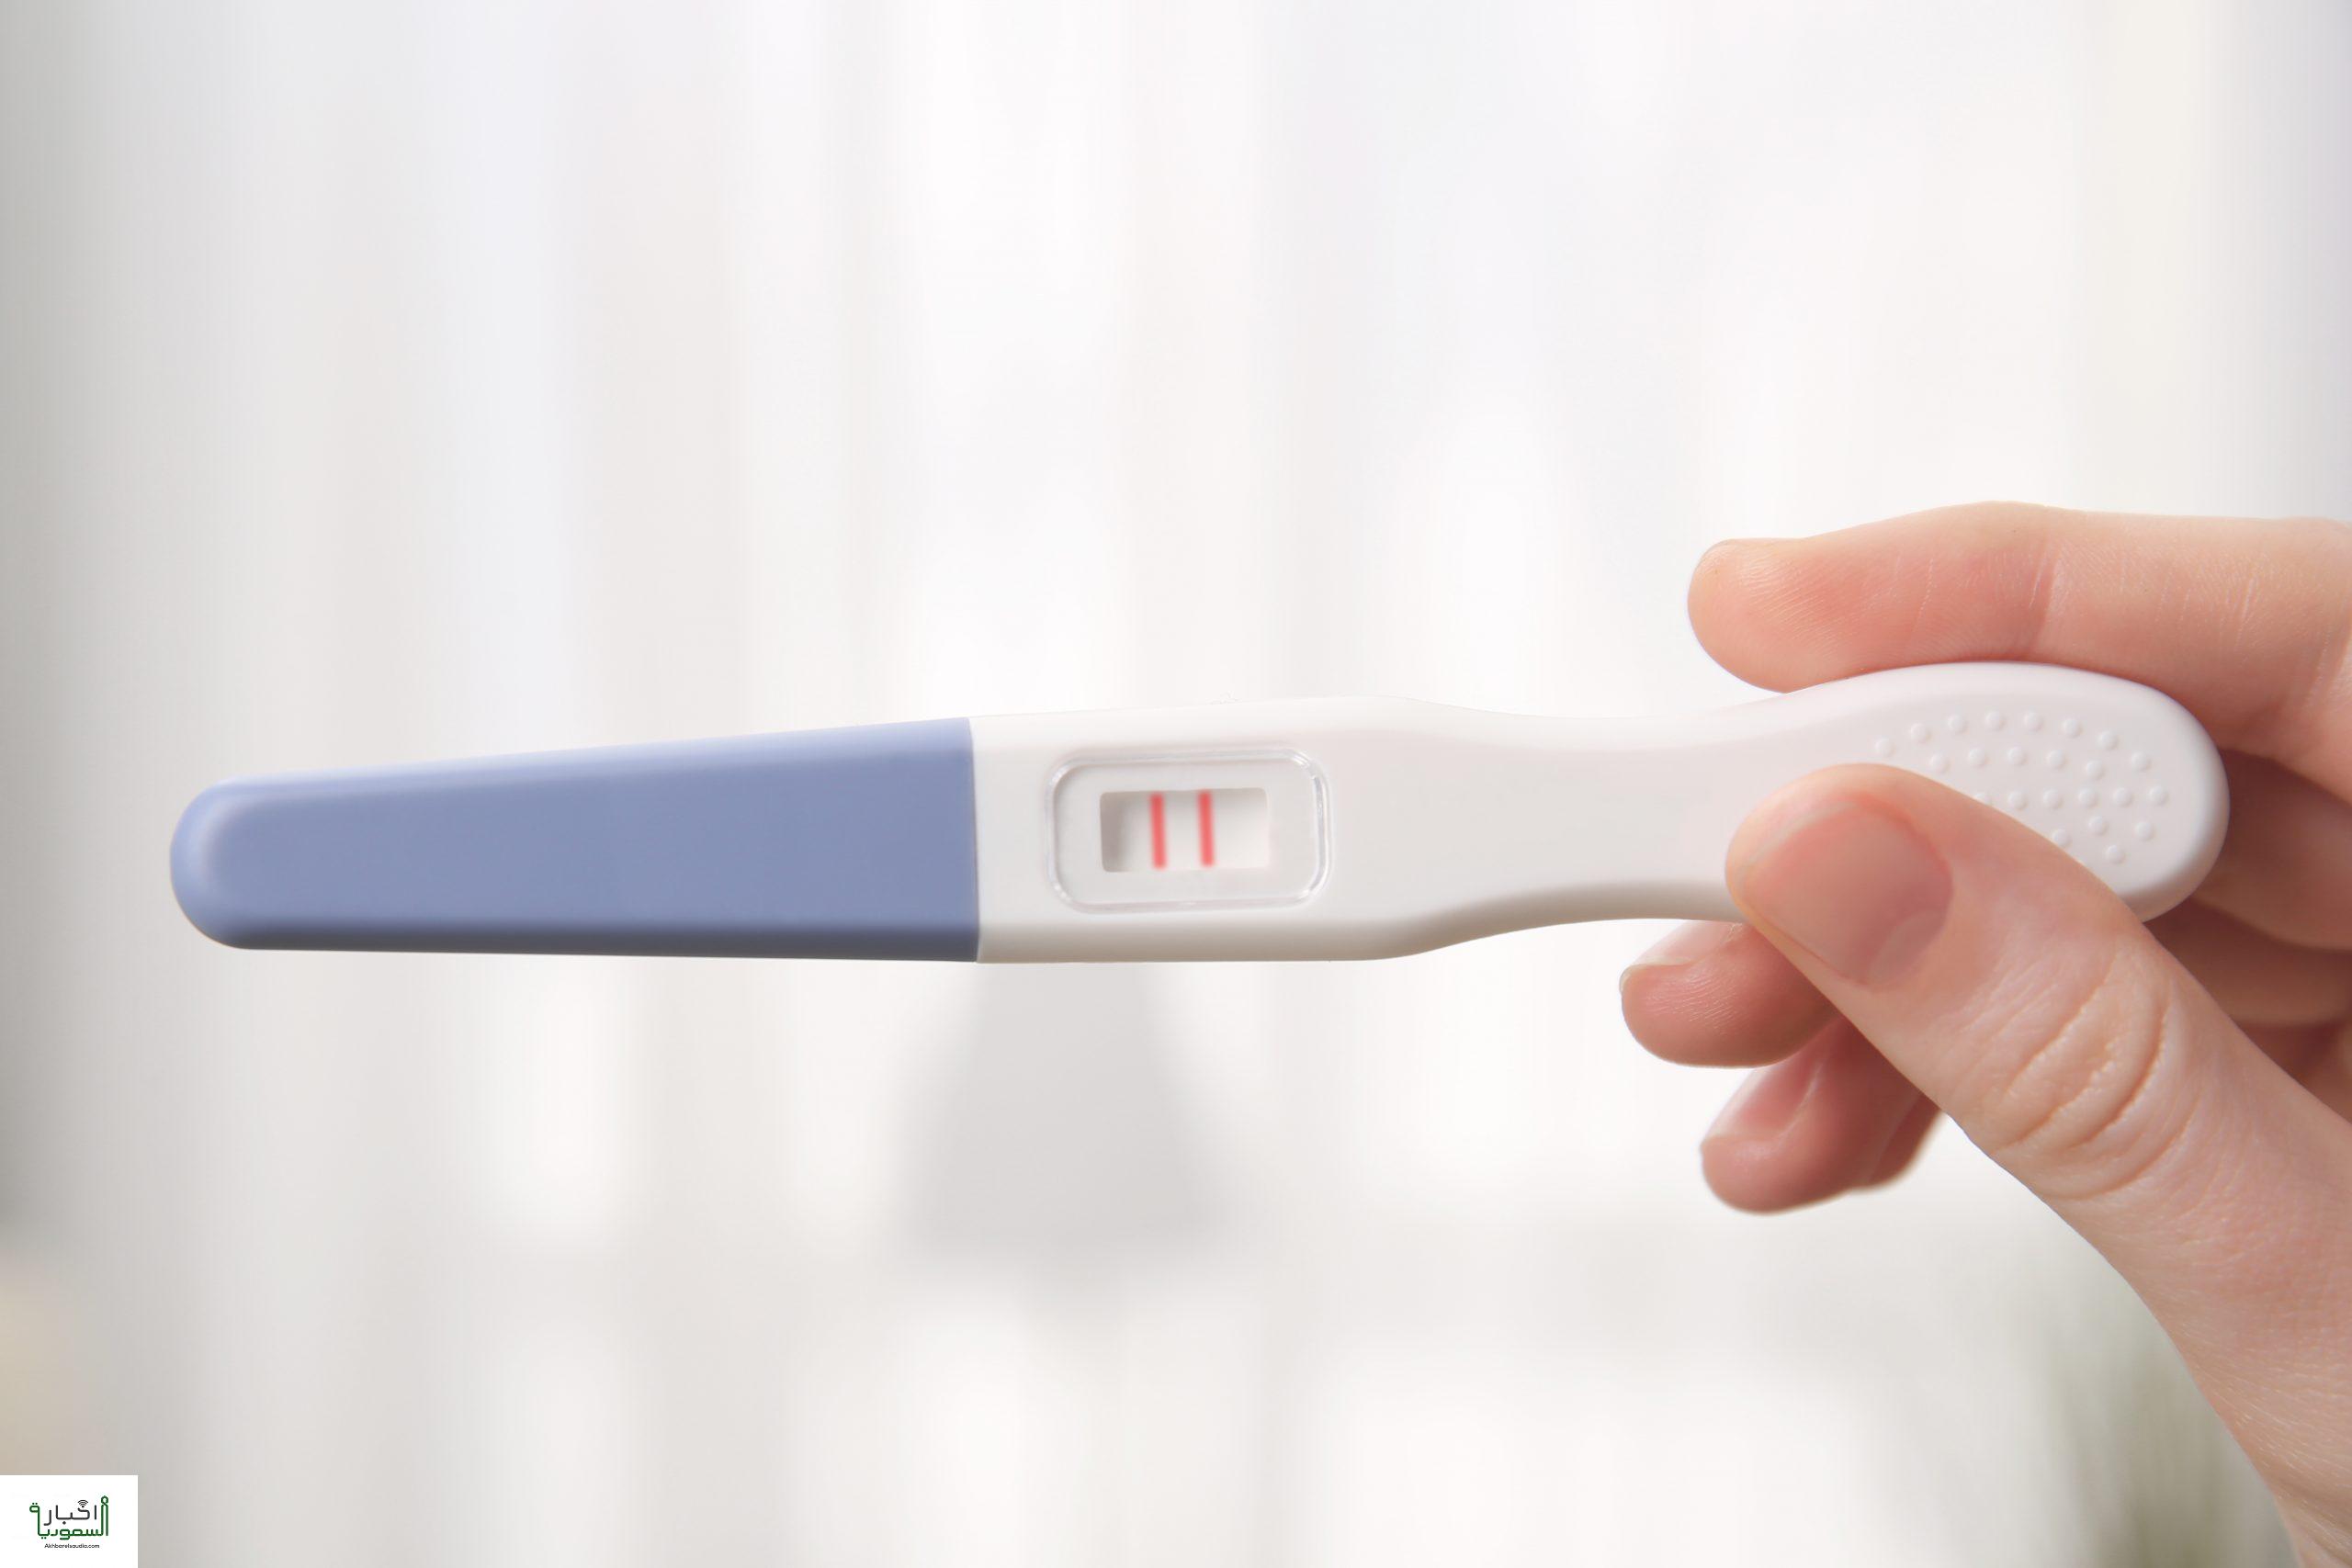 اختبار الحمل المنزلي 